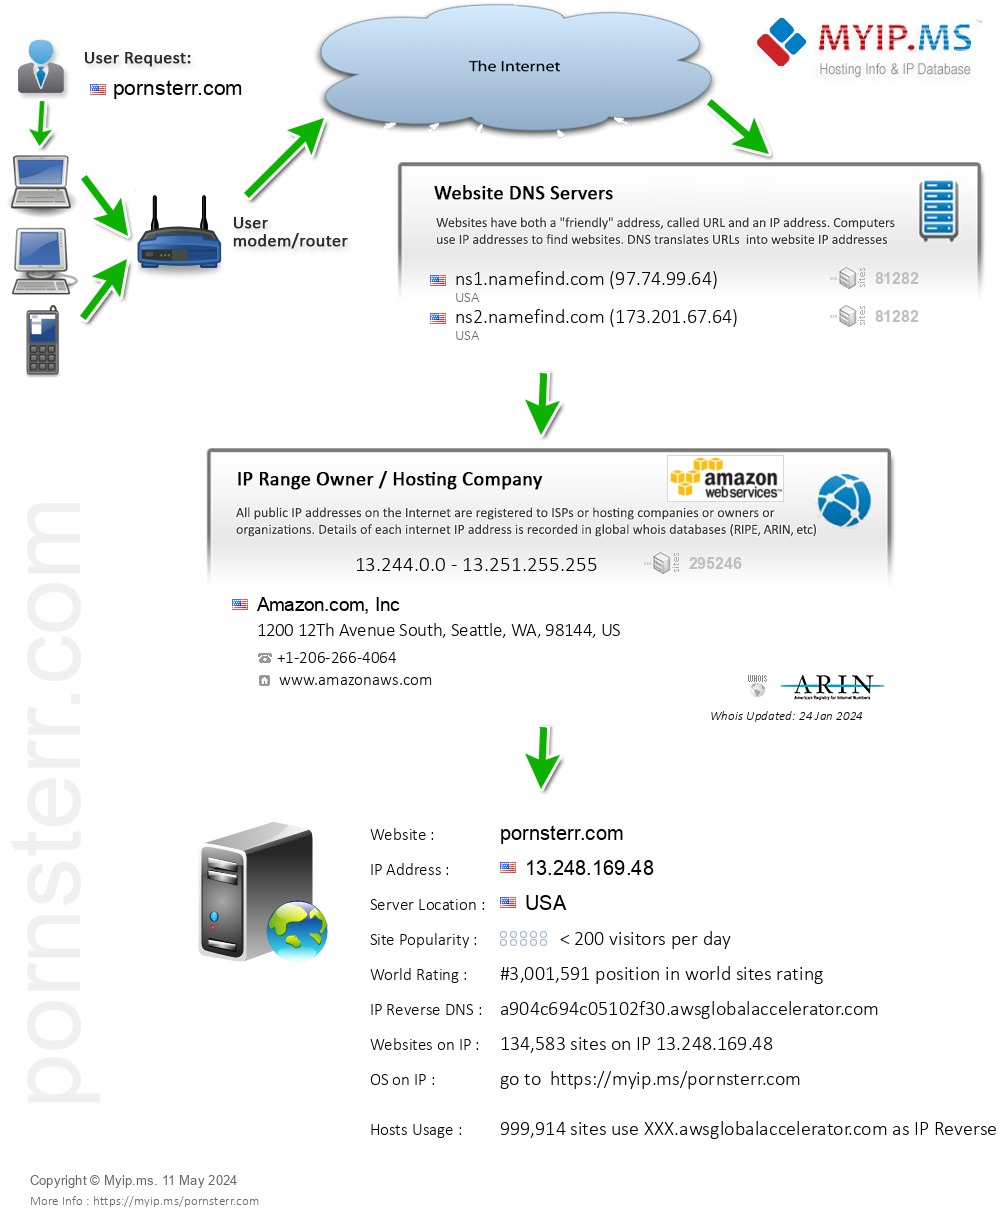 Pornsterr.com - Website Hosting Visual IP Diagram